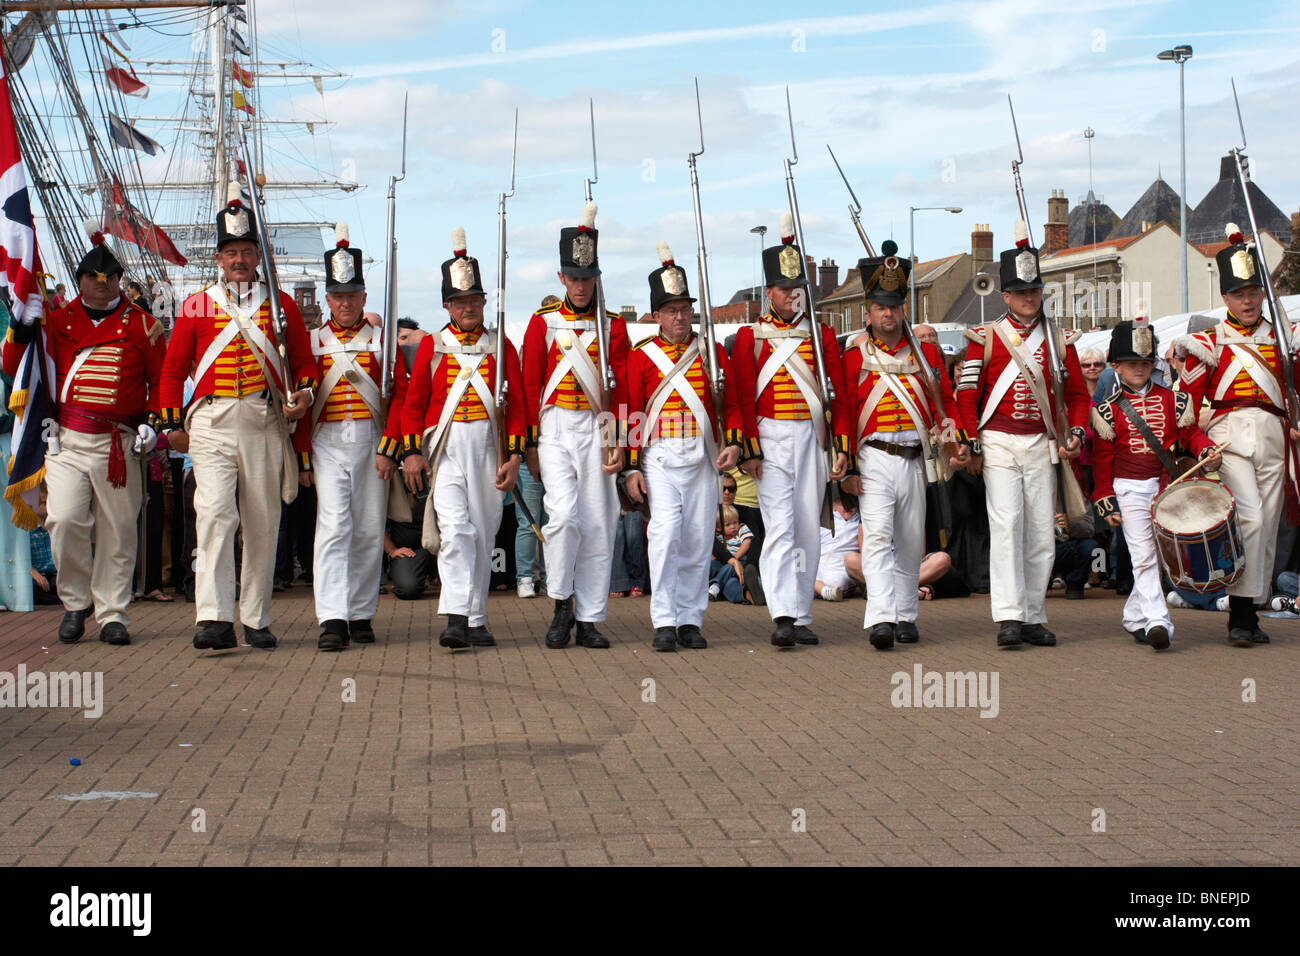 Soldaten marschieren, Flagge maritime, bunte Uniformen mit britischen Stockfoto